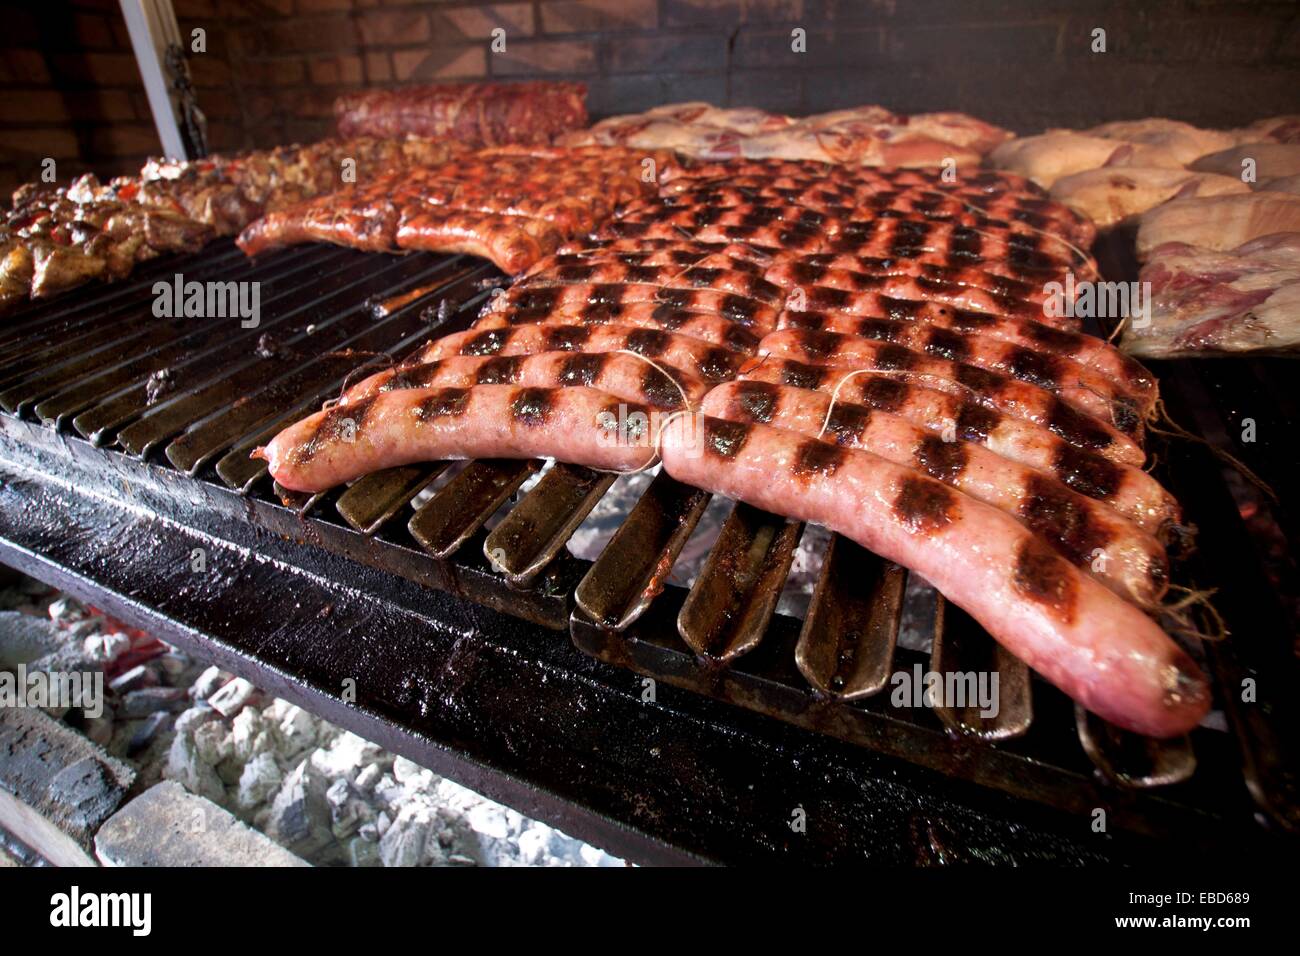 https://c8.alamy.com/comp/EBD689/longanizas-a-la-parrilla-grilled-pork-sausages-spain-EBD689.jpg